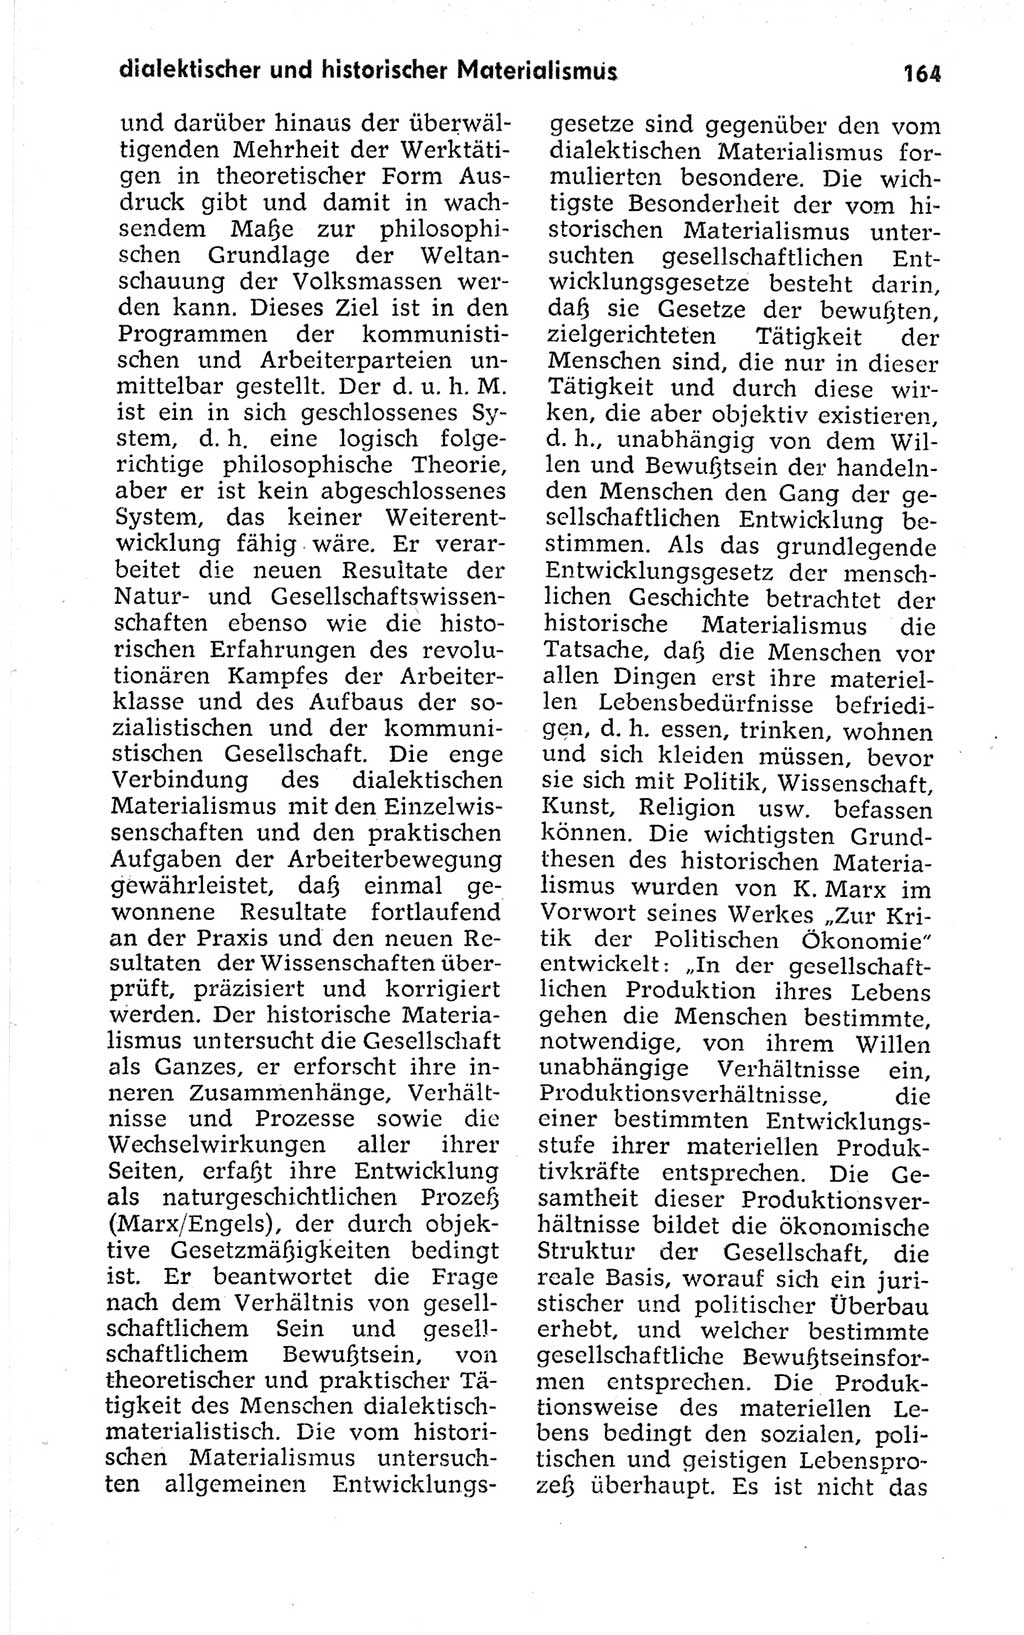 Kleines politisches Wörterbuch [Deutsche Demokratische Republik (DDR)] 1973, Seite 164 (Kl. pol. Wb. DDR 1973, S. 164)